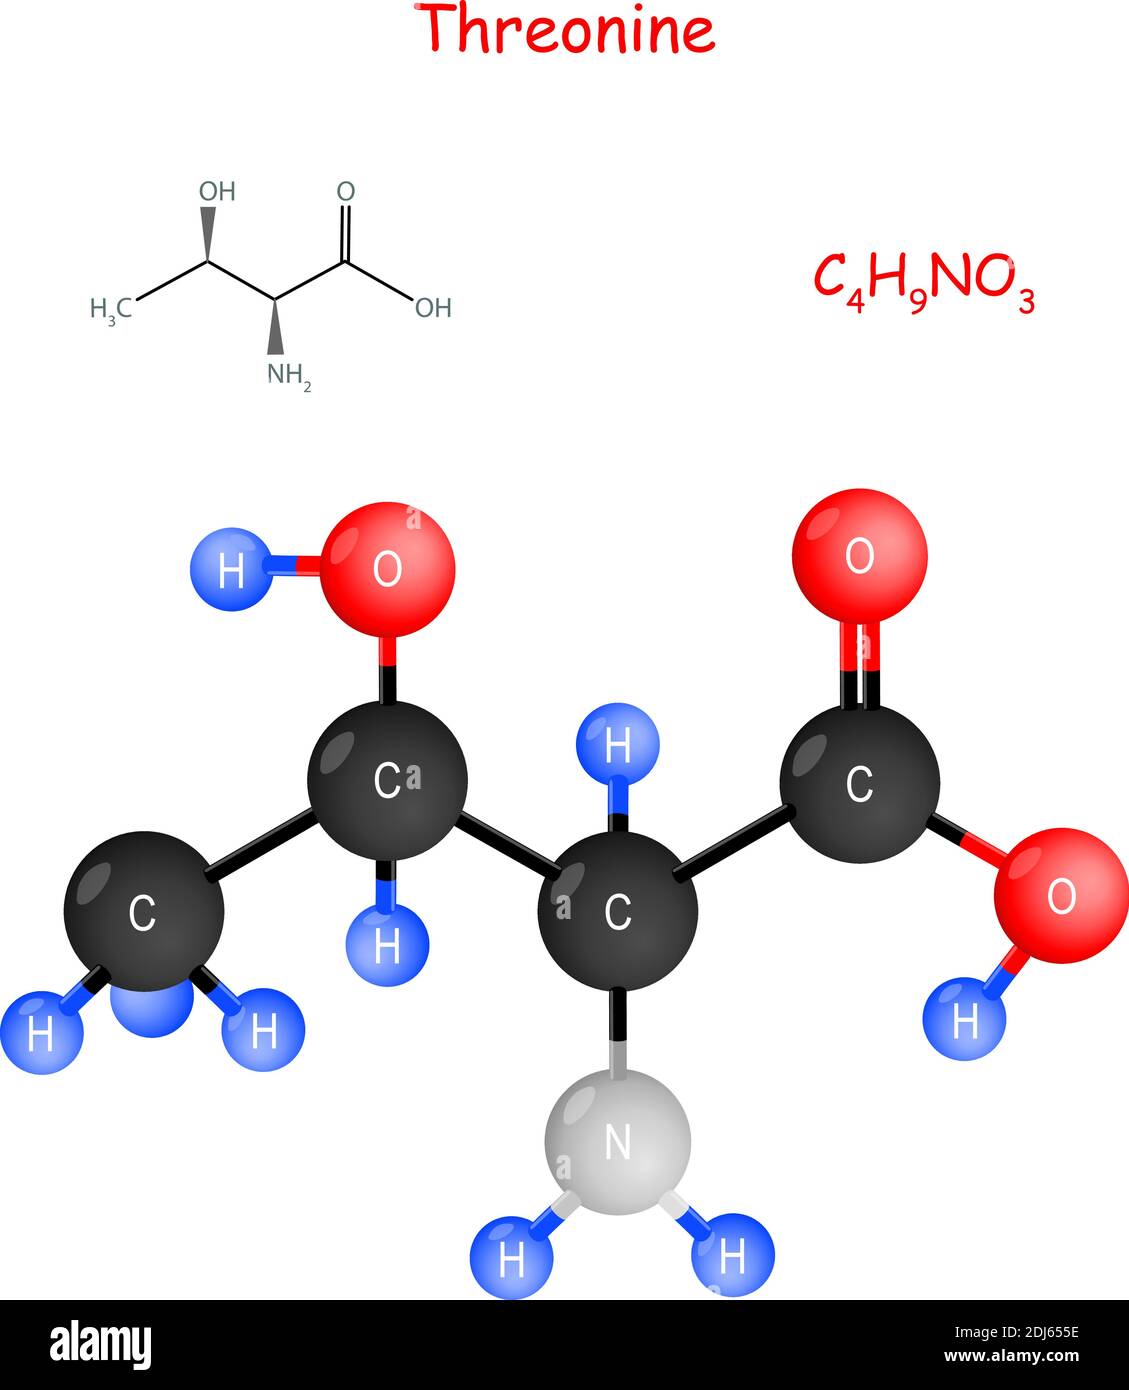 Threonin ist eine essentielle Aminosäure für die Biosynthese von Proteinen. Chemische Strukturformel und Modell des Moleküls. C4H9NO3. Vektorgrafik Stock Vektor